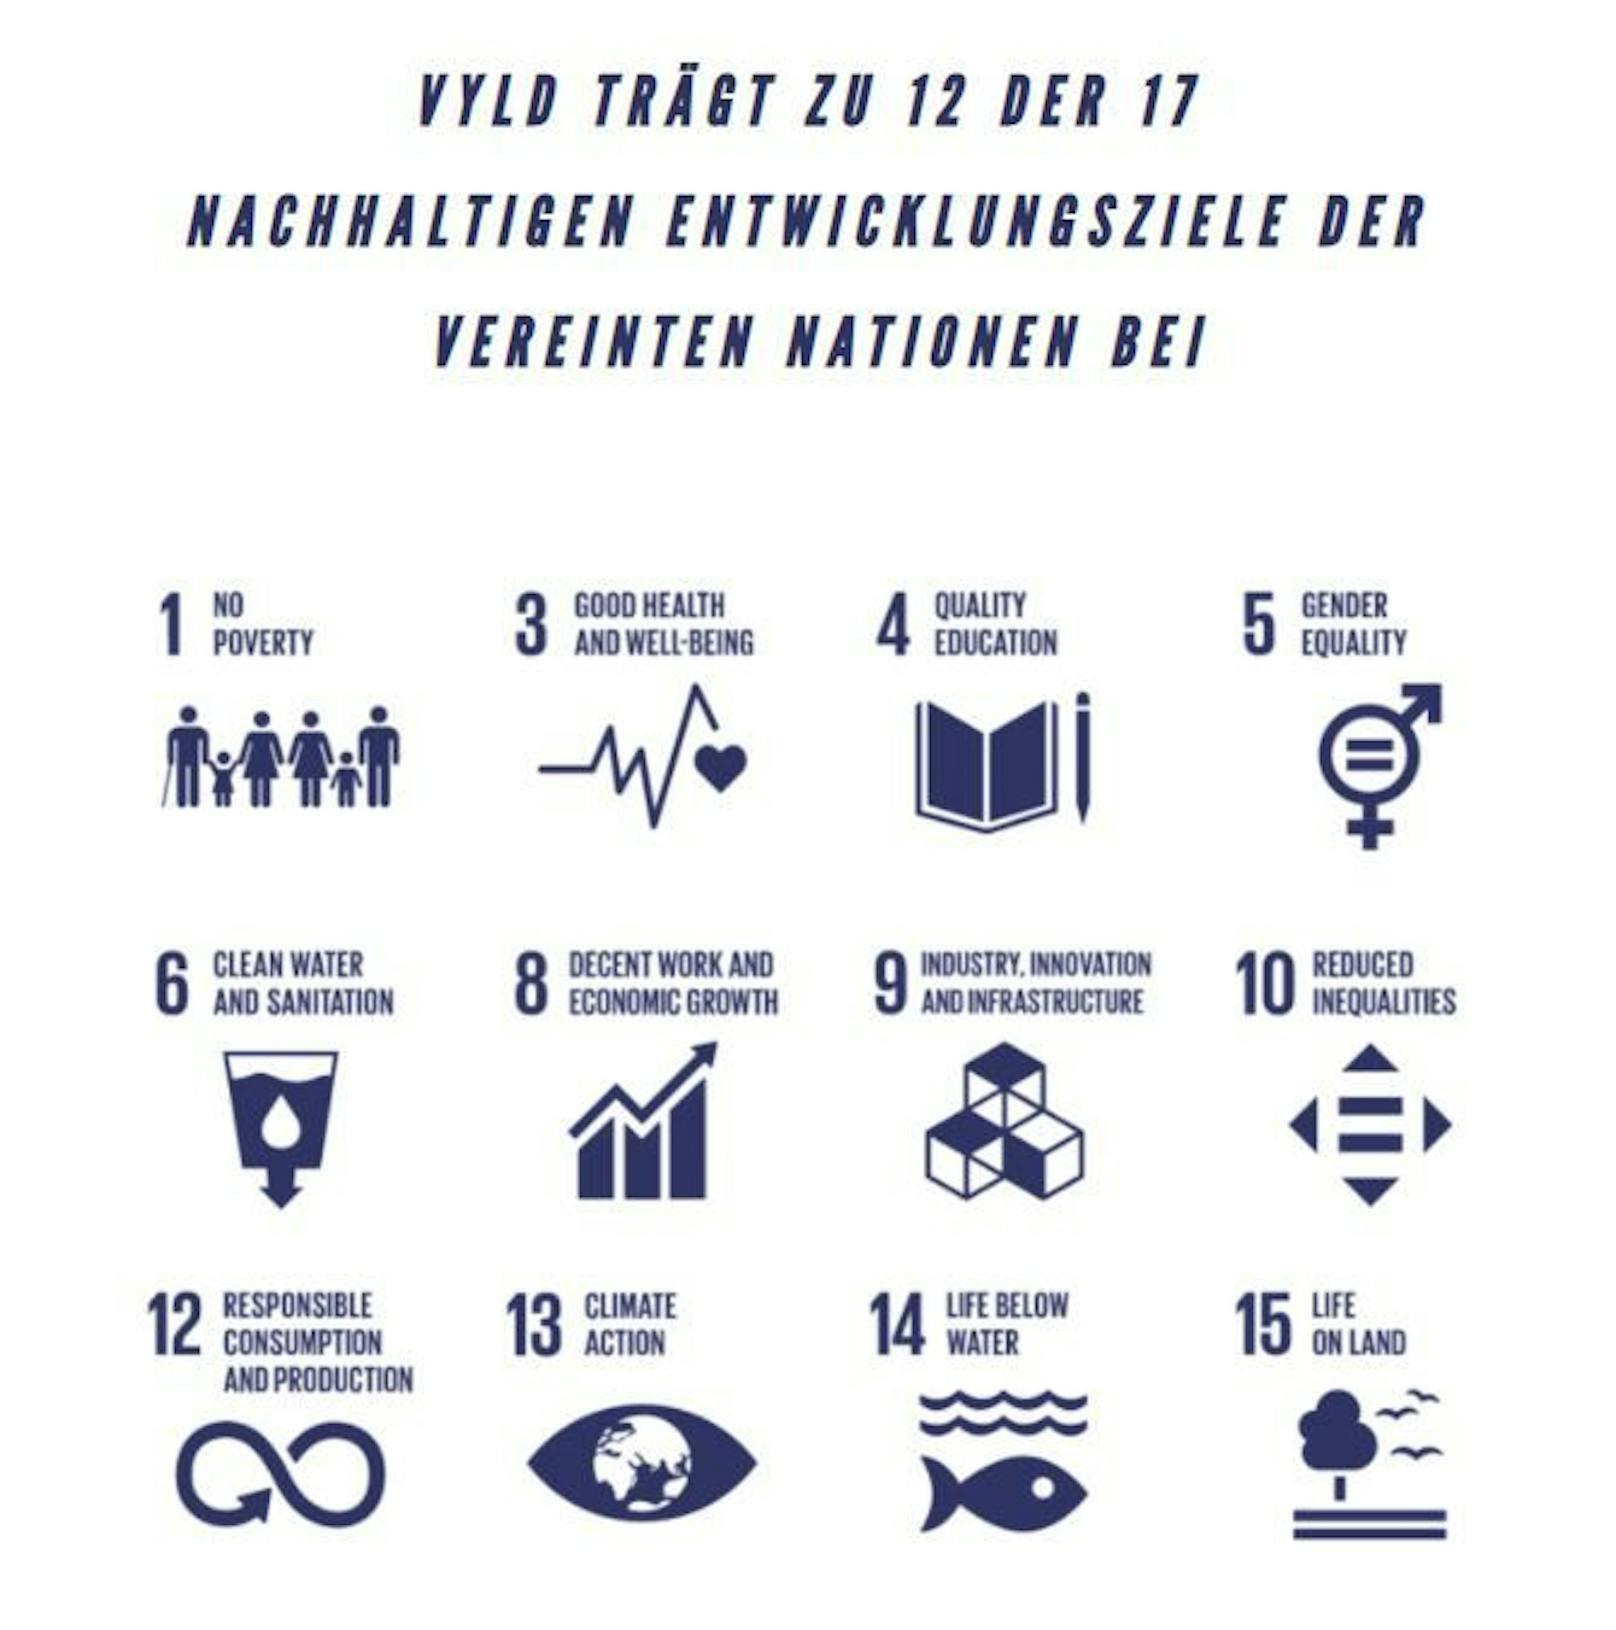 Nach Eigenaussage trägt das Startup zu 12 der 17 Ziele für nachhaltige Entwicklung der Vereinten Nationen (Agenda 2030) bei.